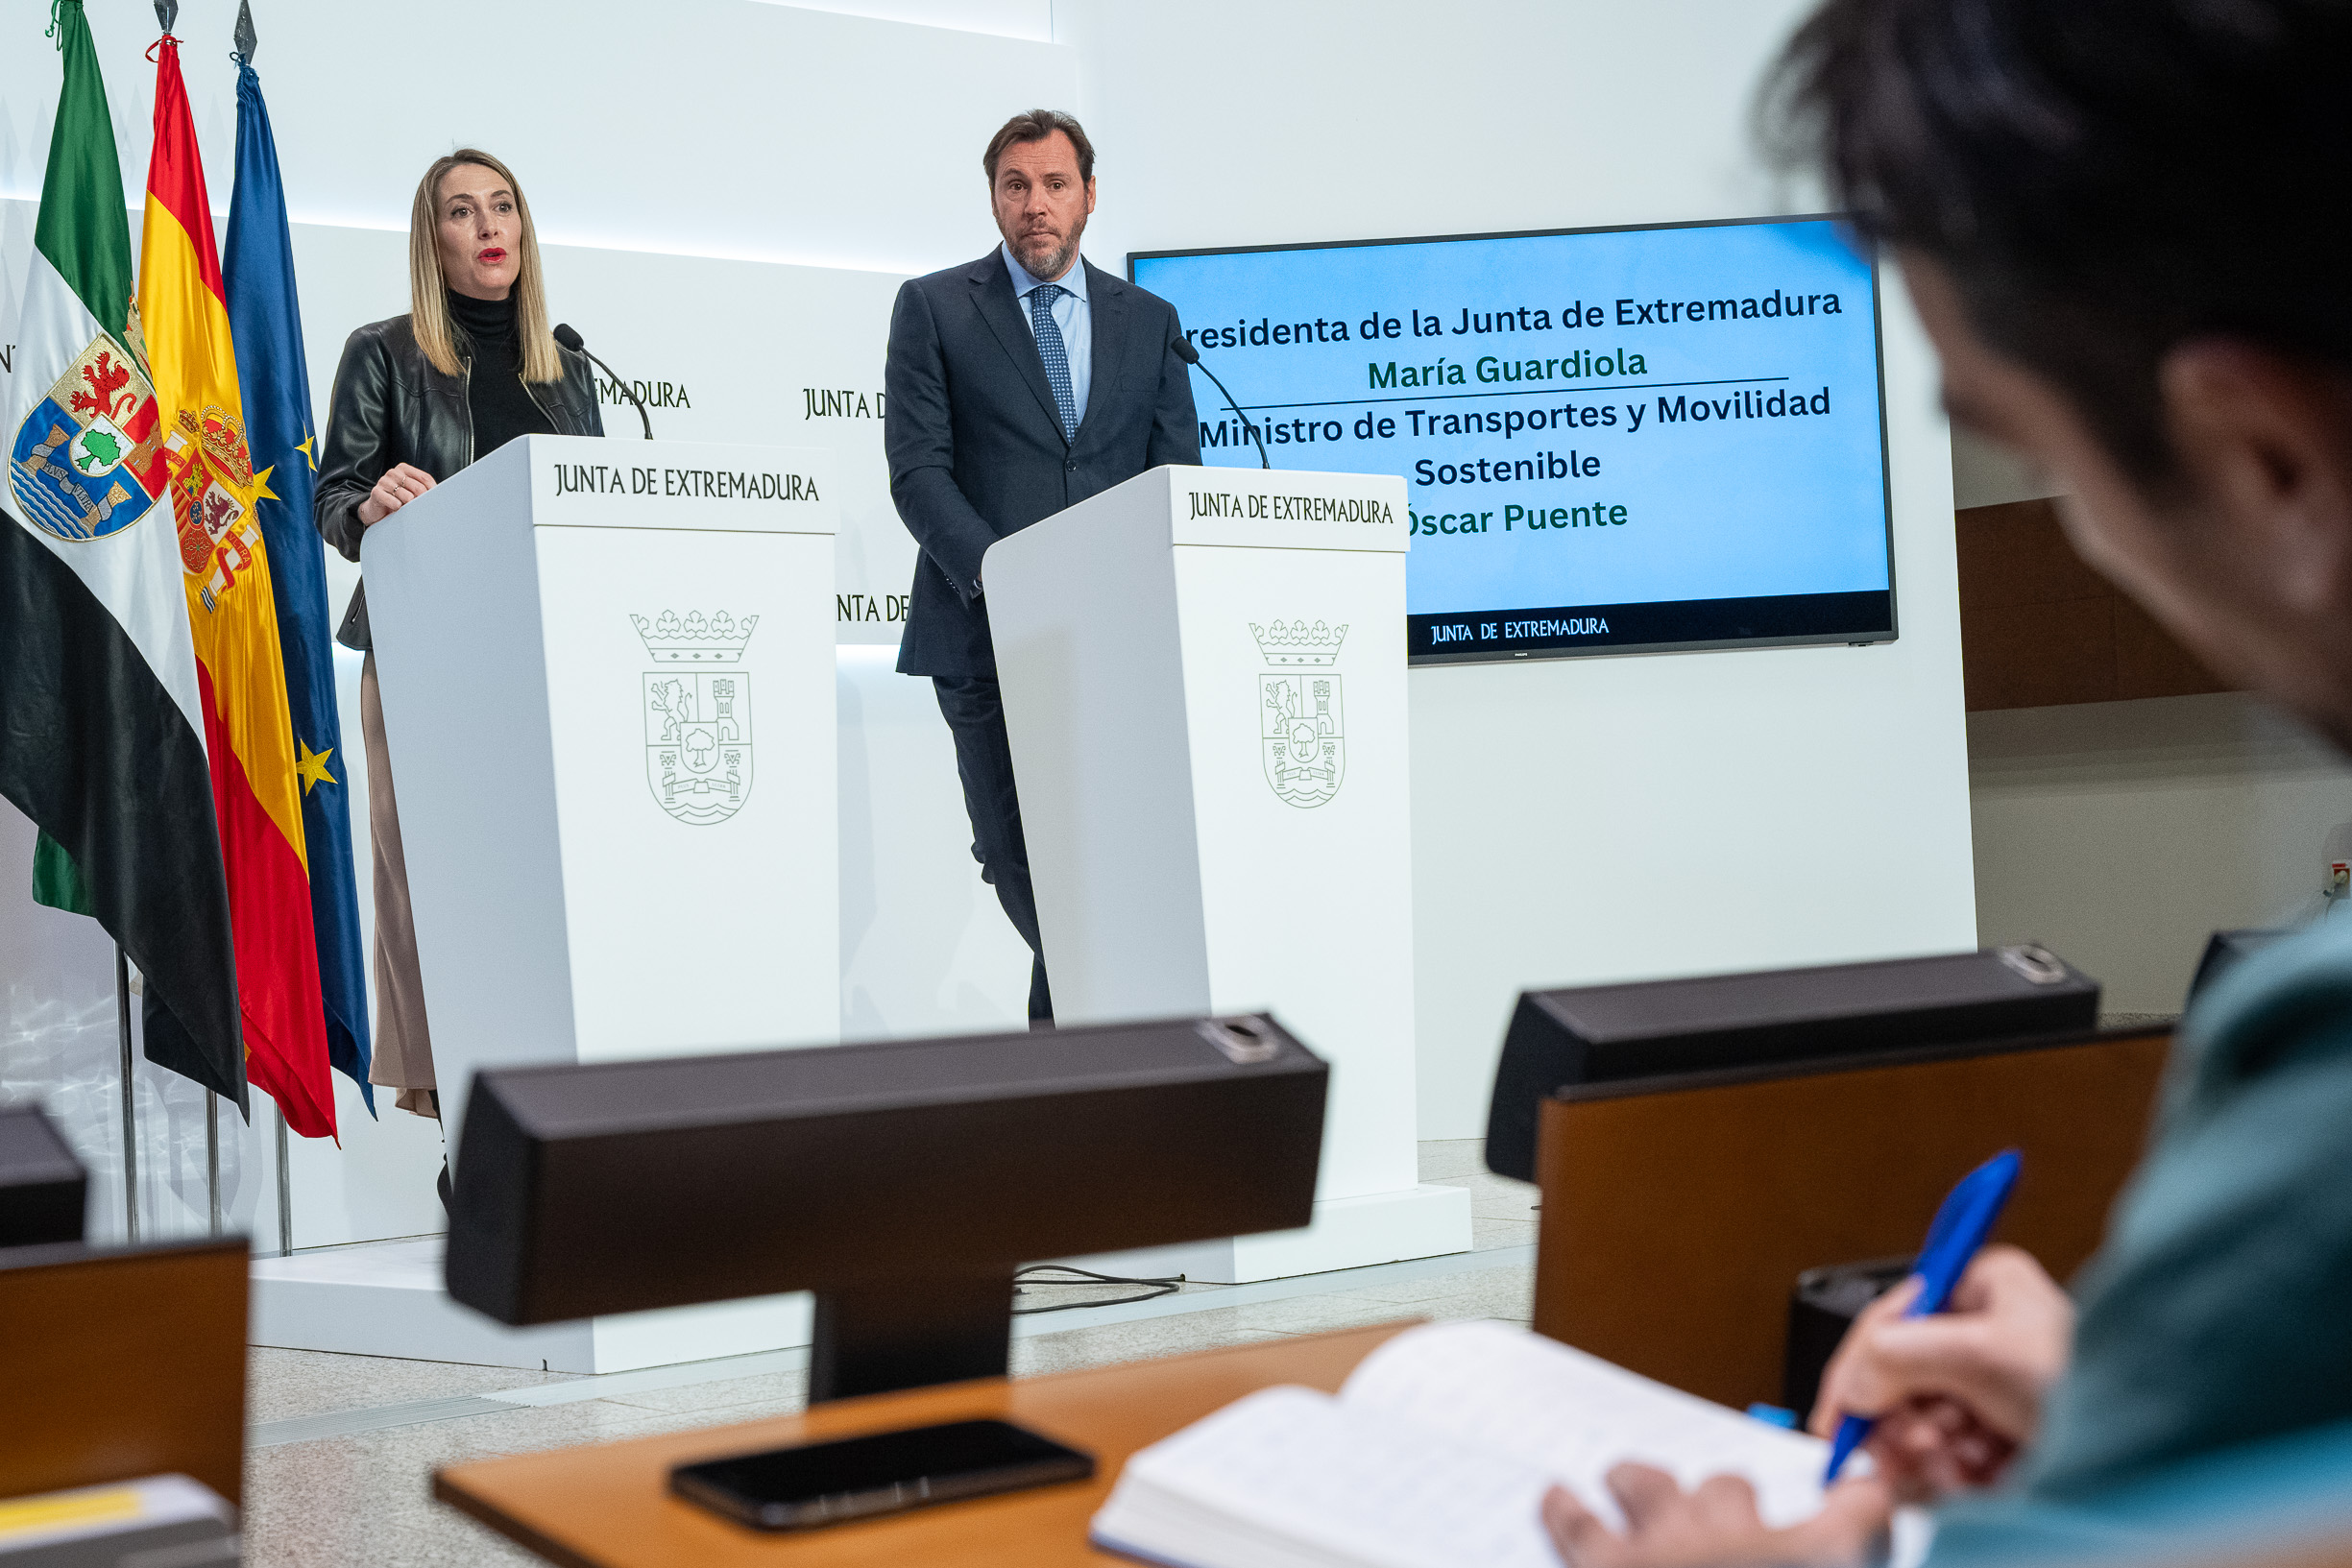 La presidenta de la Junta, María Guardiola, y el ministro de Transportes y Movilidad Sostenible, Óscar Puente, en la rueda de prensa.